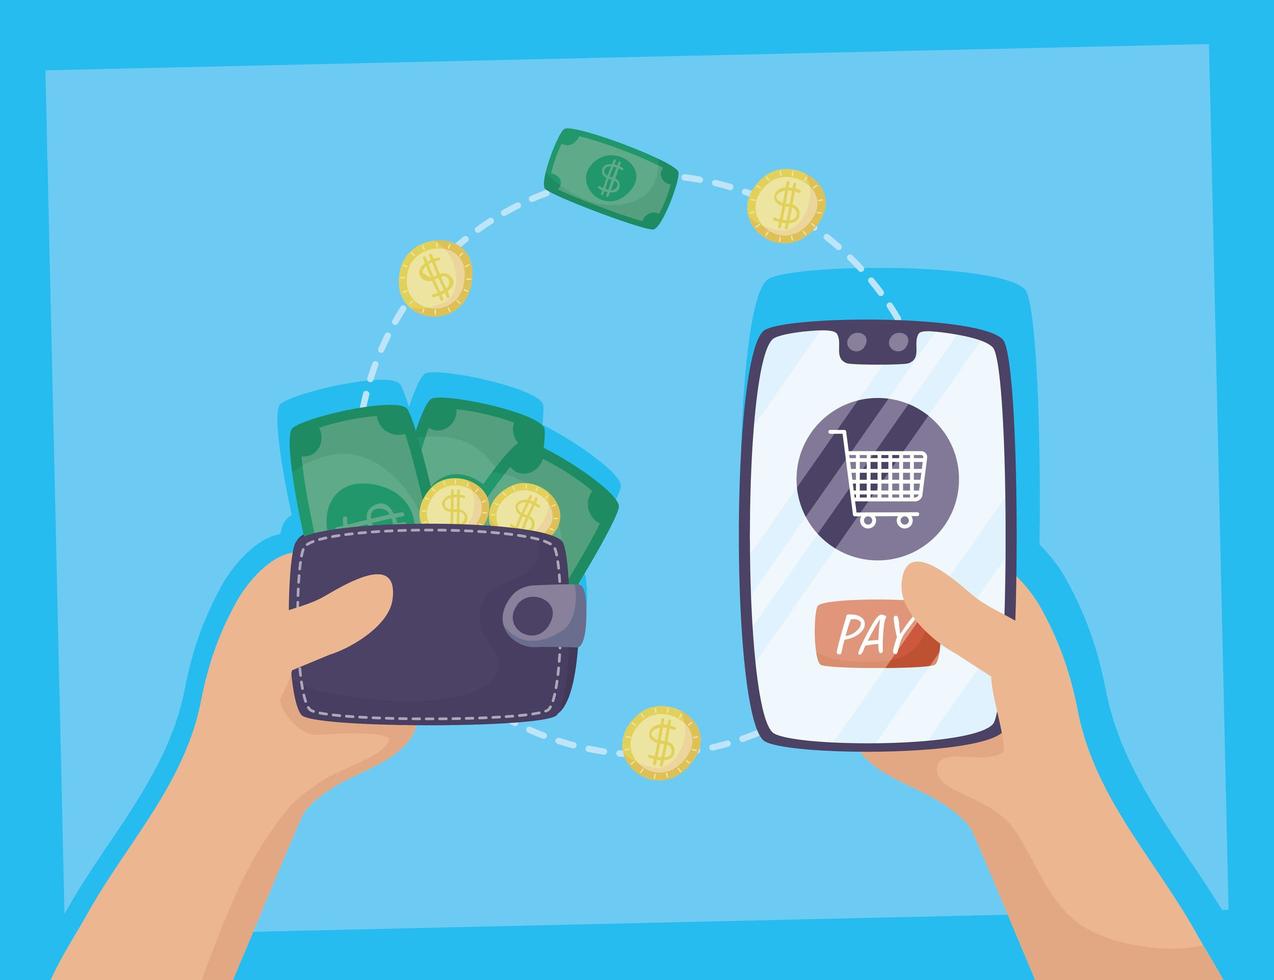 technologie de paiement en ligne avec smartphone vecteur